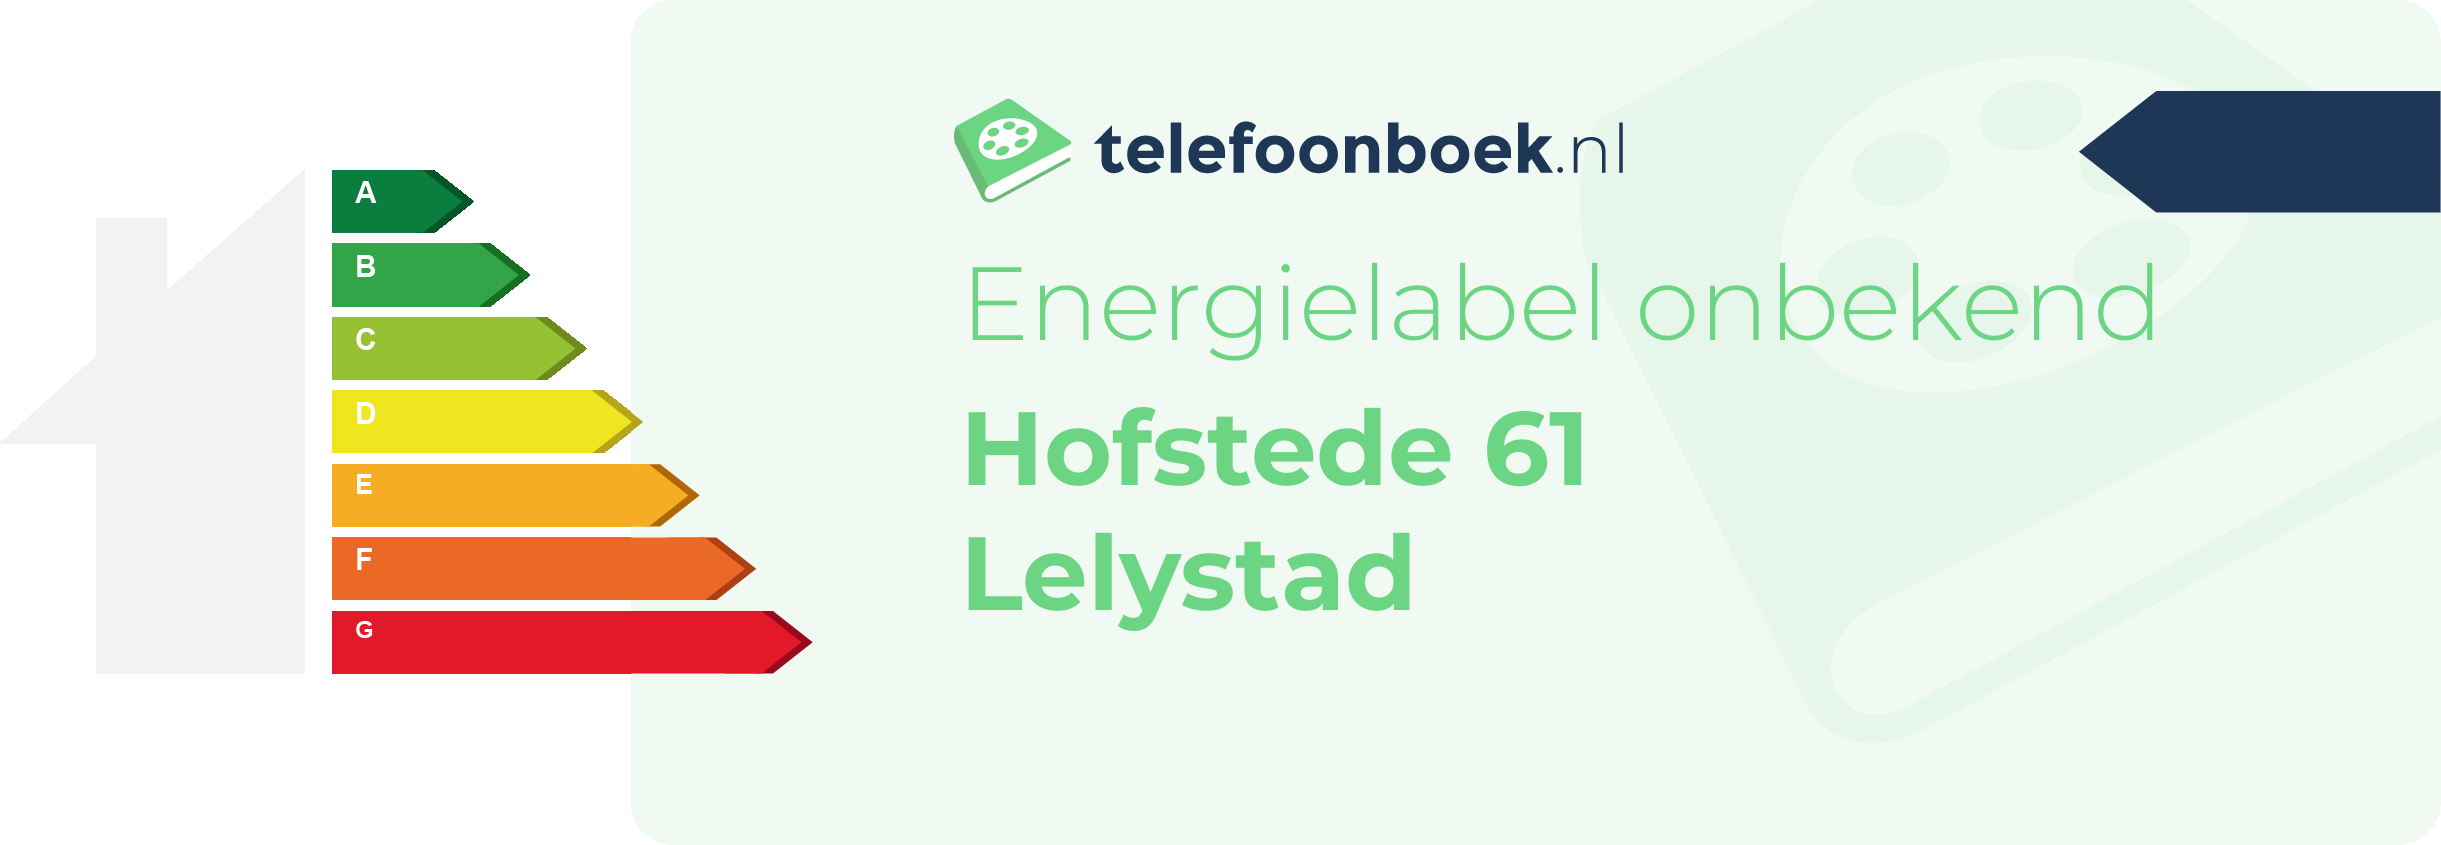 Energielabel Hofstede 61 Lelystad